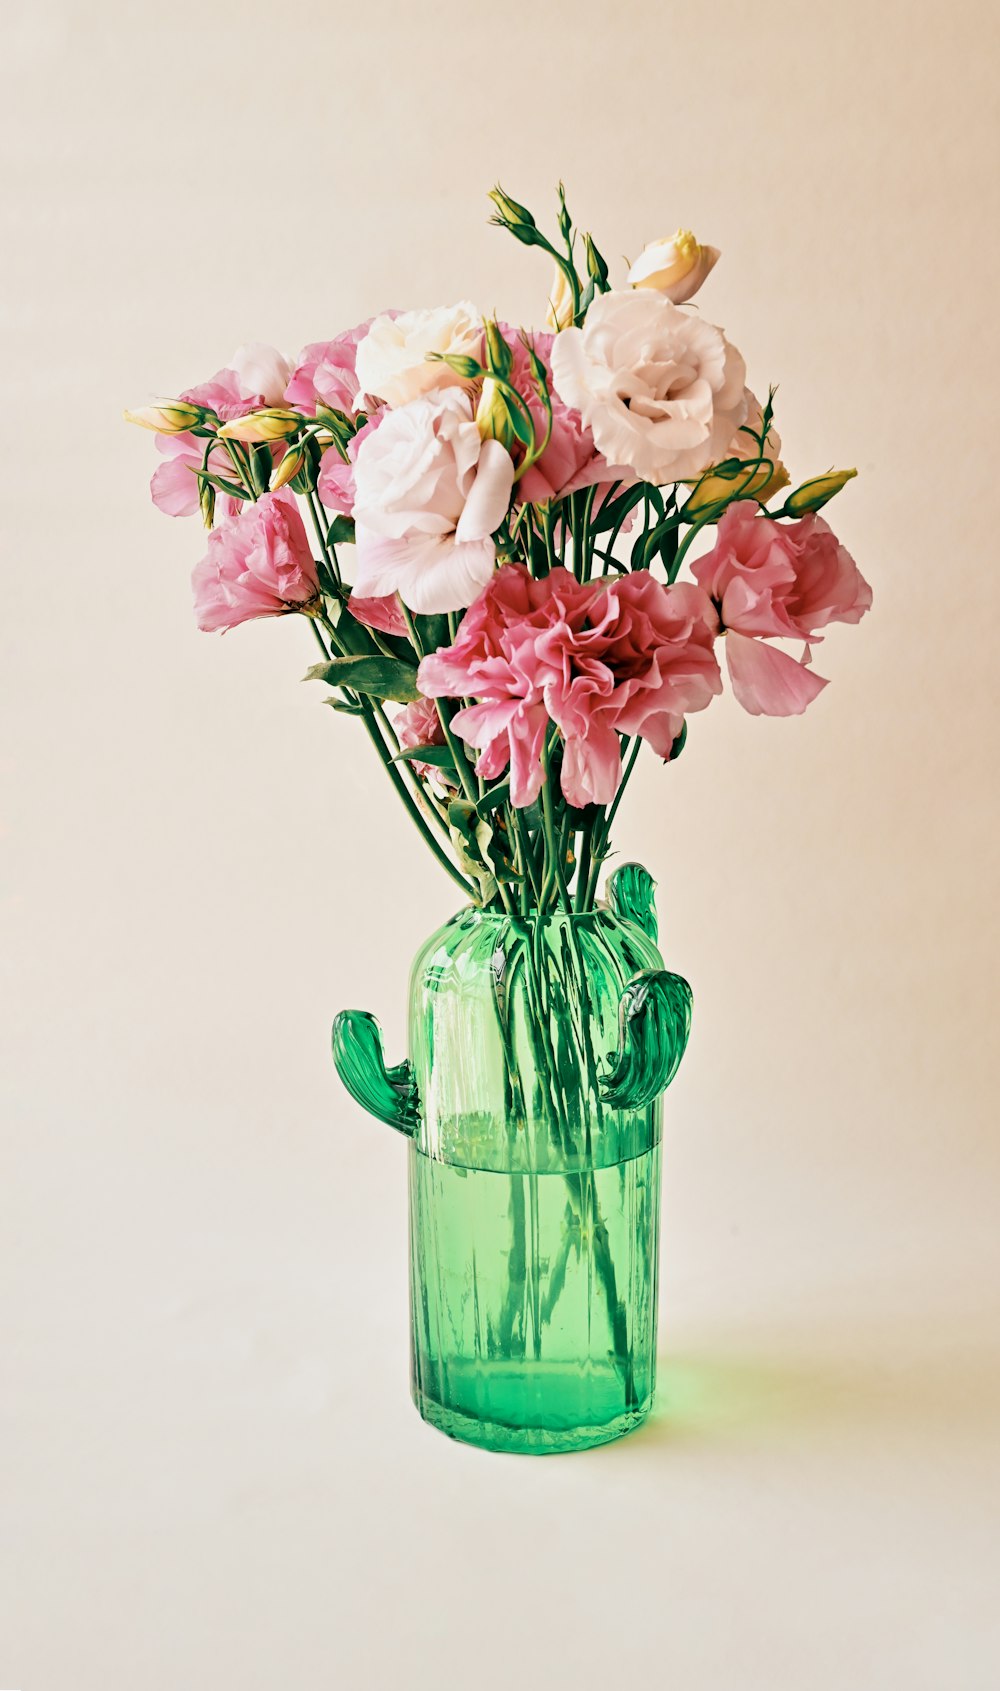 녹색 유리 꽃병에 분홍색과 흰색 꽃